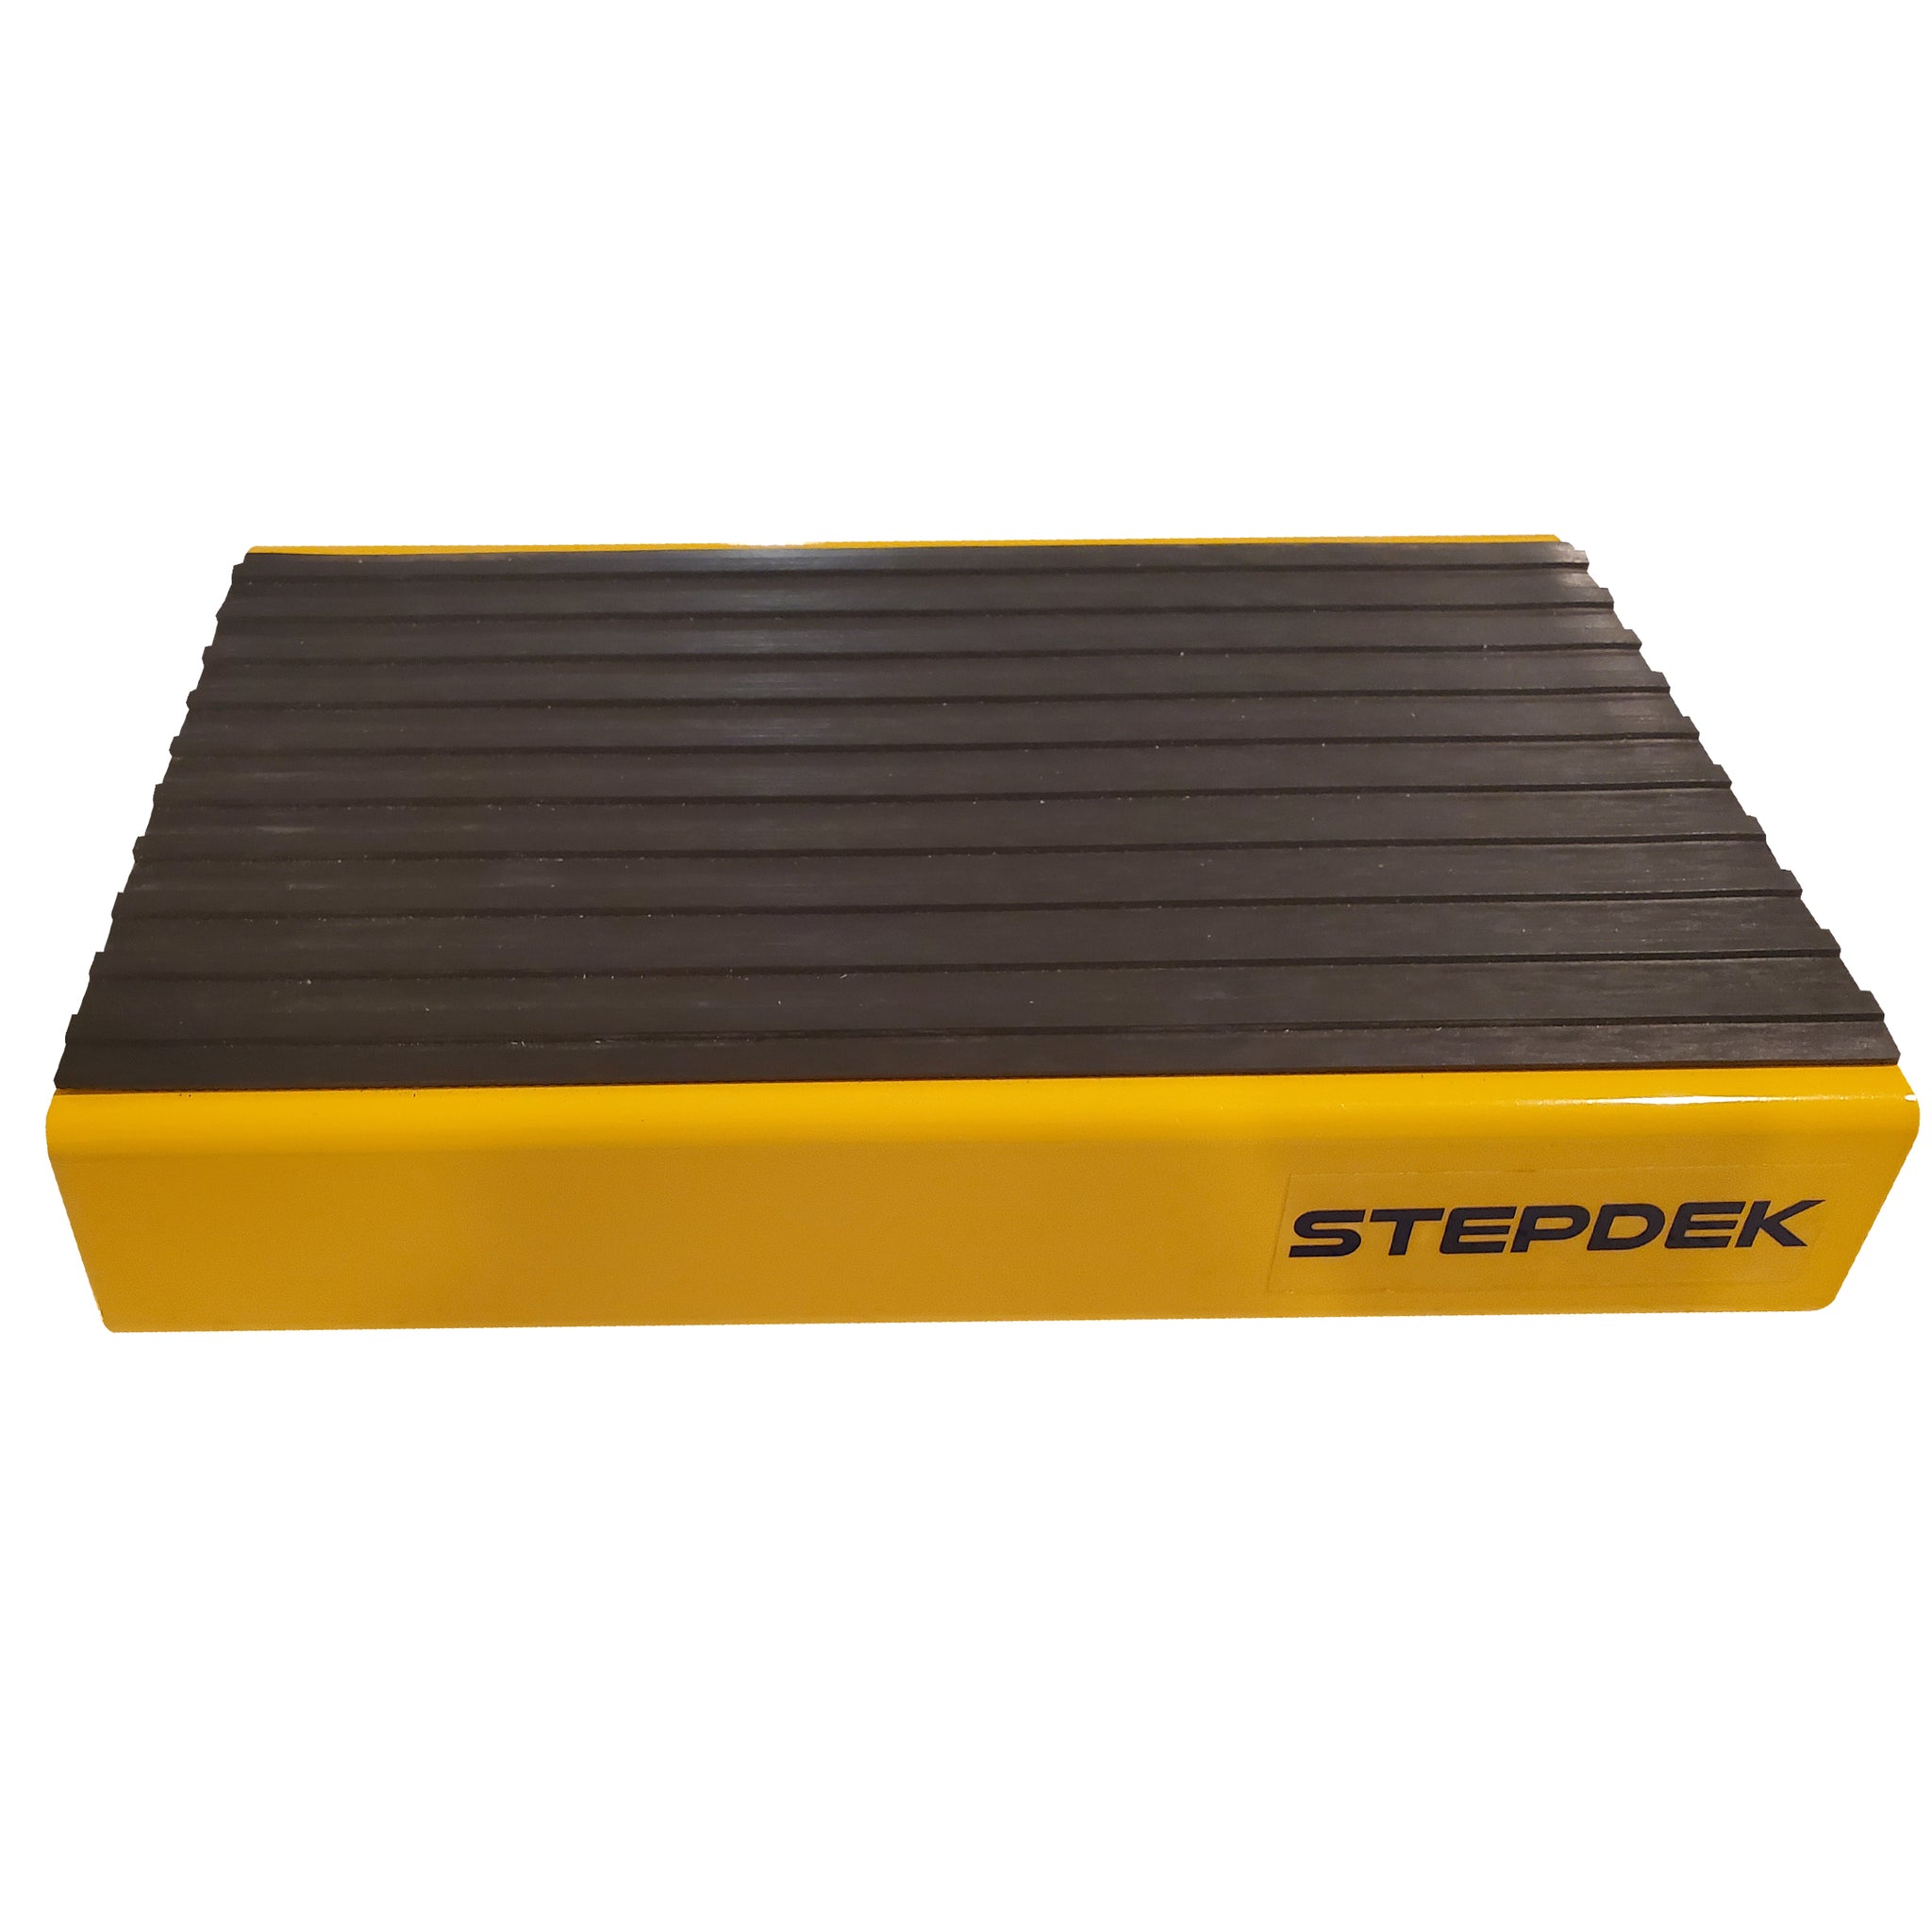 STEPDEK – Stepdek